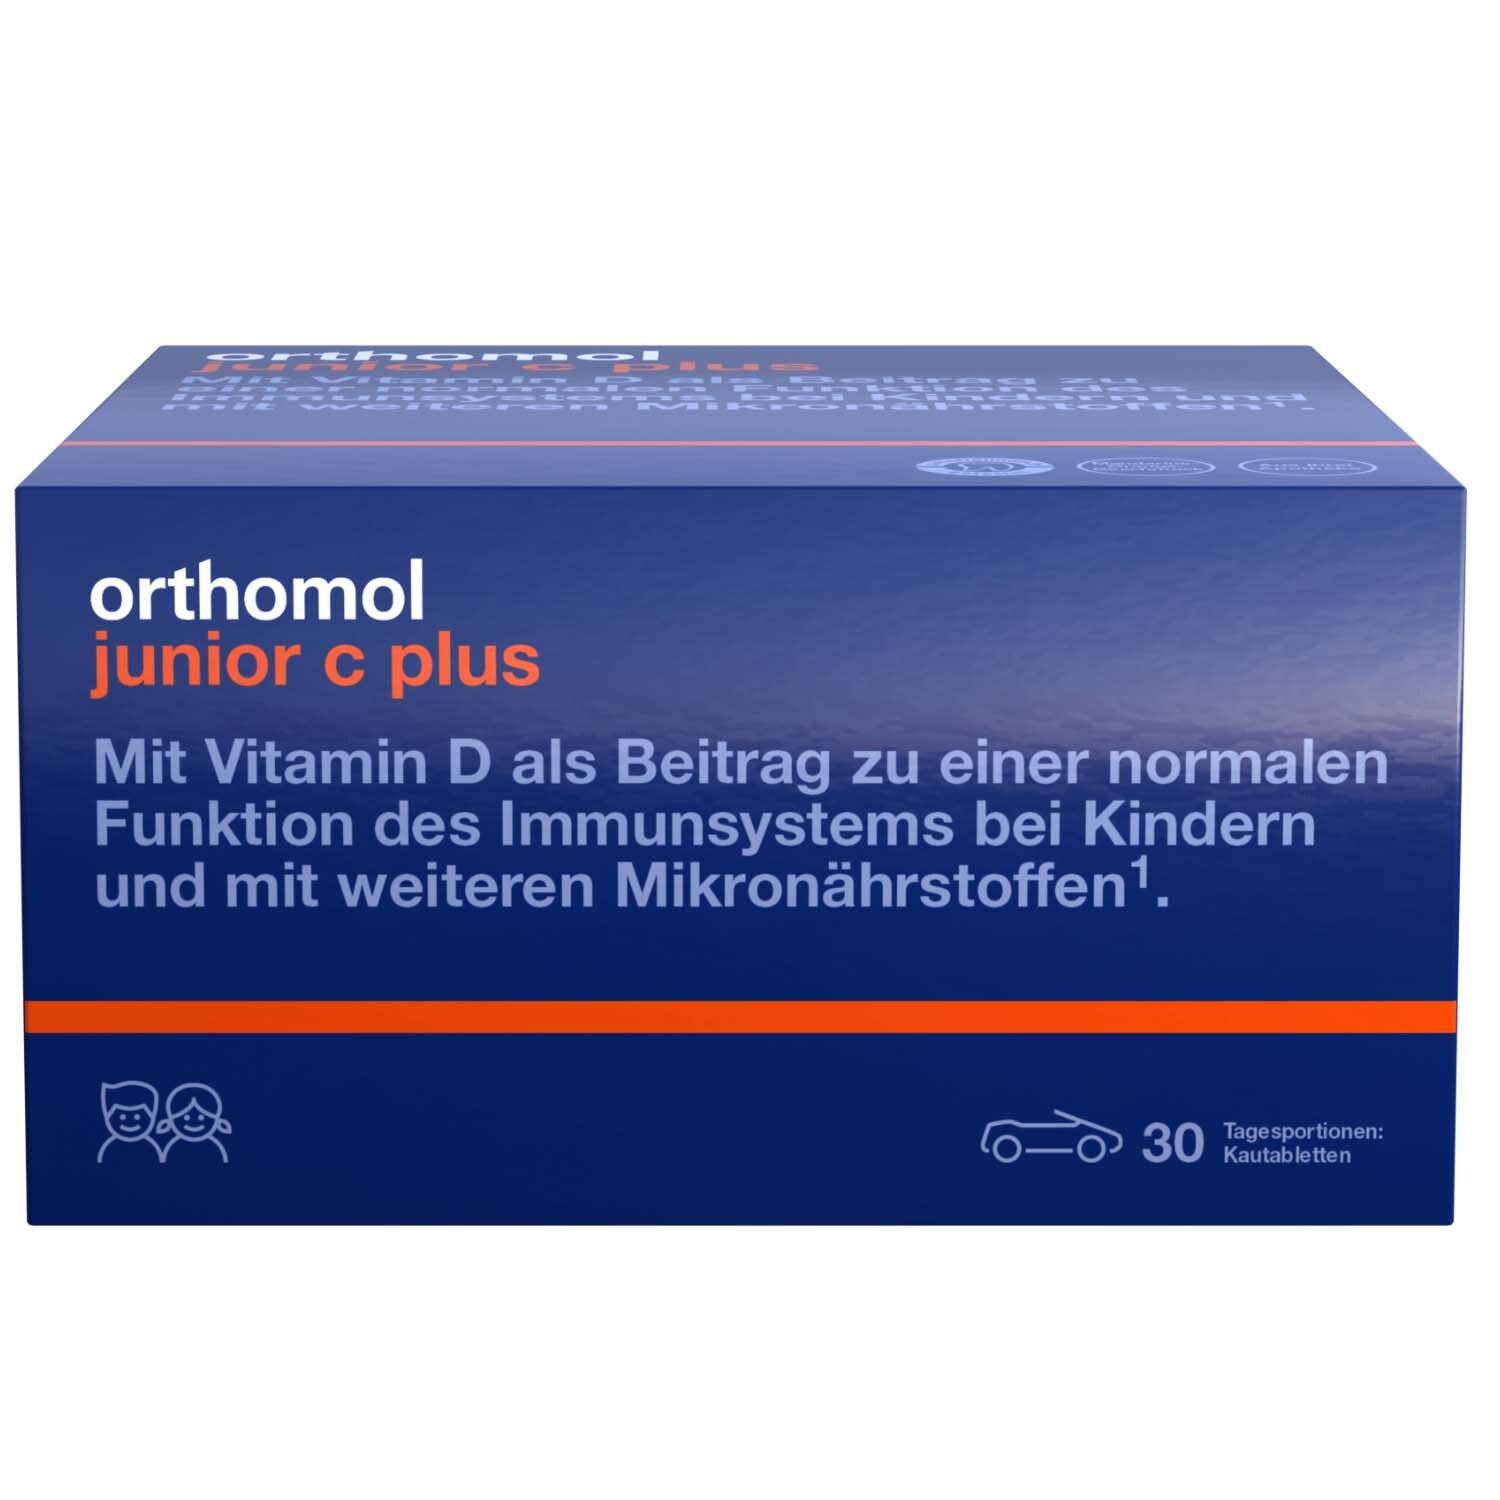 Orthomol junior C plus - mit Vitamin C als Beitrag zu einer normalen Funktion des Immunsystems - Waldfrucht-Geschmack - Kautabletten